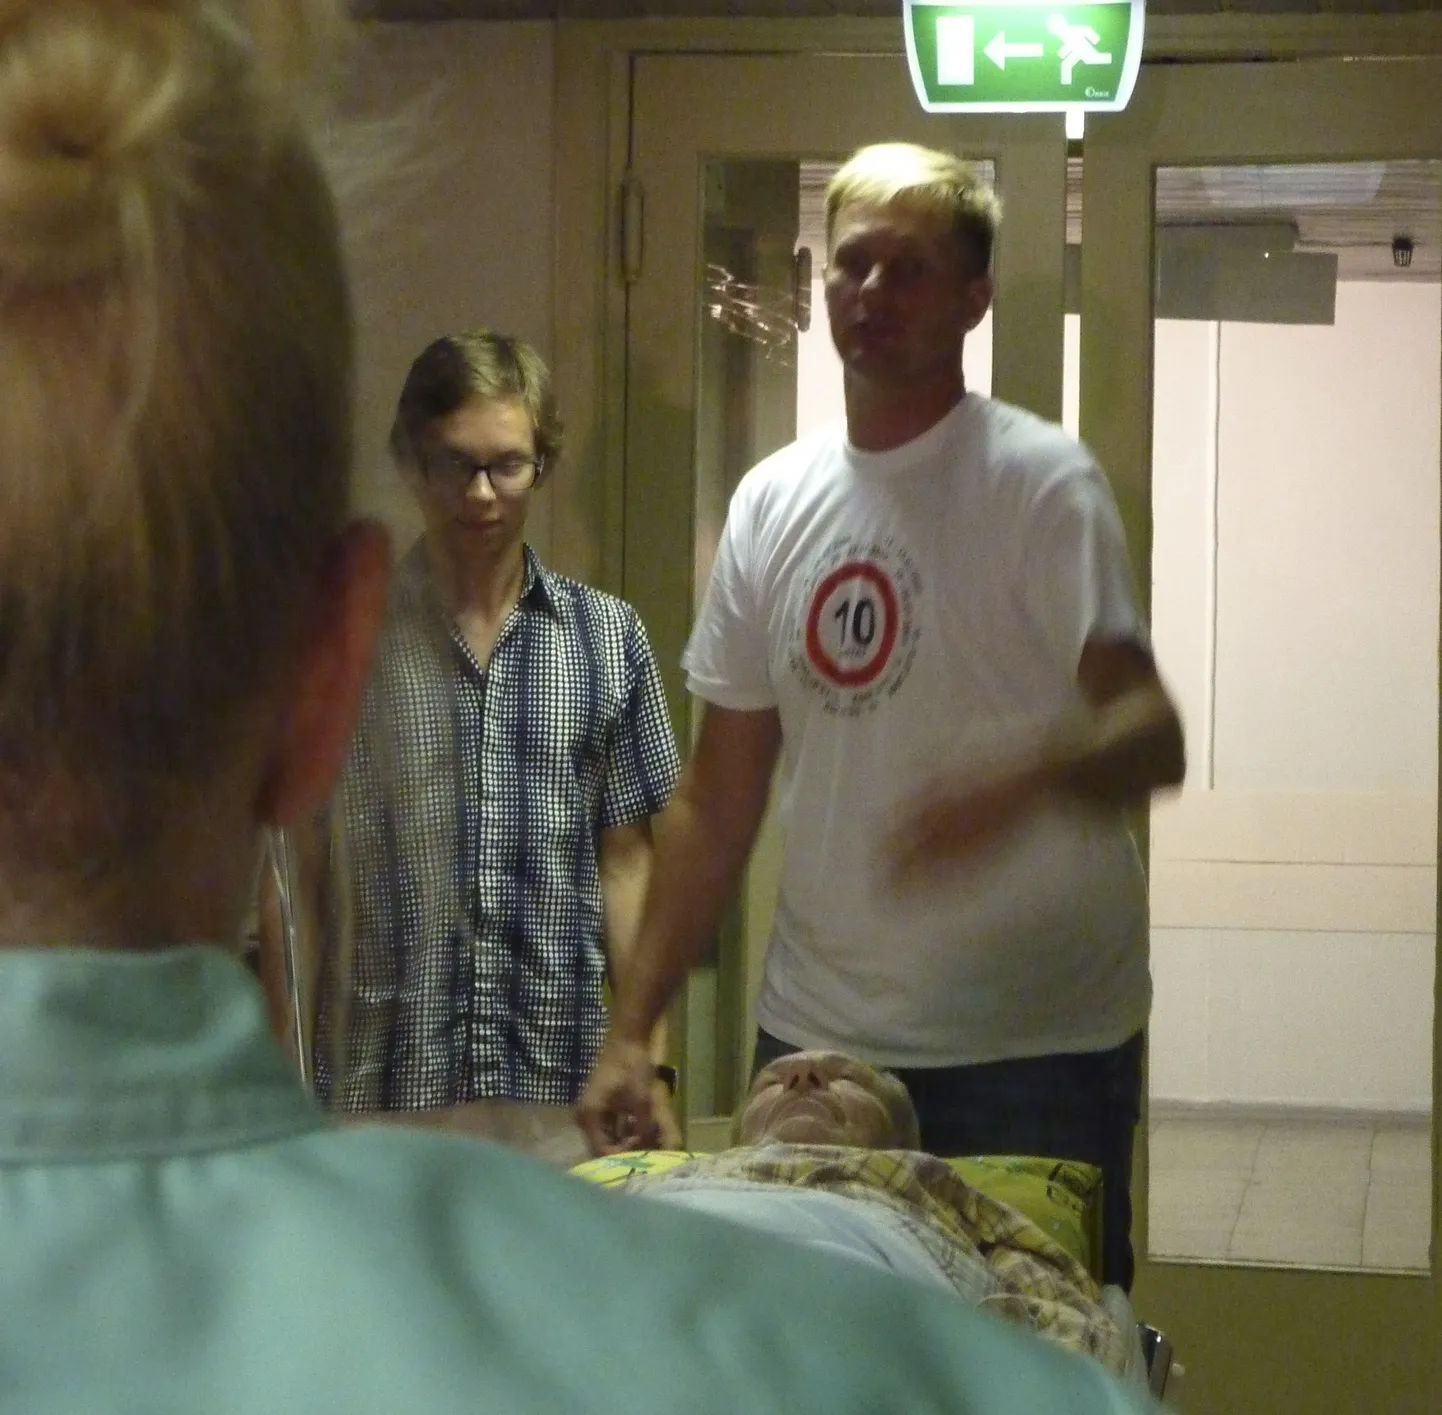 Ühe võttepaigana kasutas filmigrupp Rakvere haiglat, kus võeti üles novell “Normaalsed inimesed”. Jaanus Lekk (paremal) arutab näitlejatega, kuidas lugu filmis näidata.